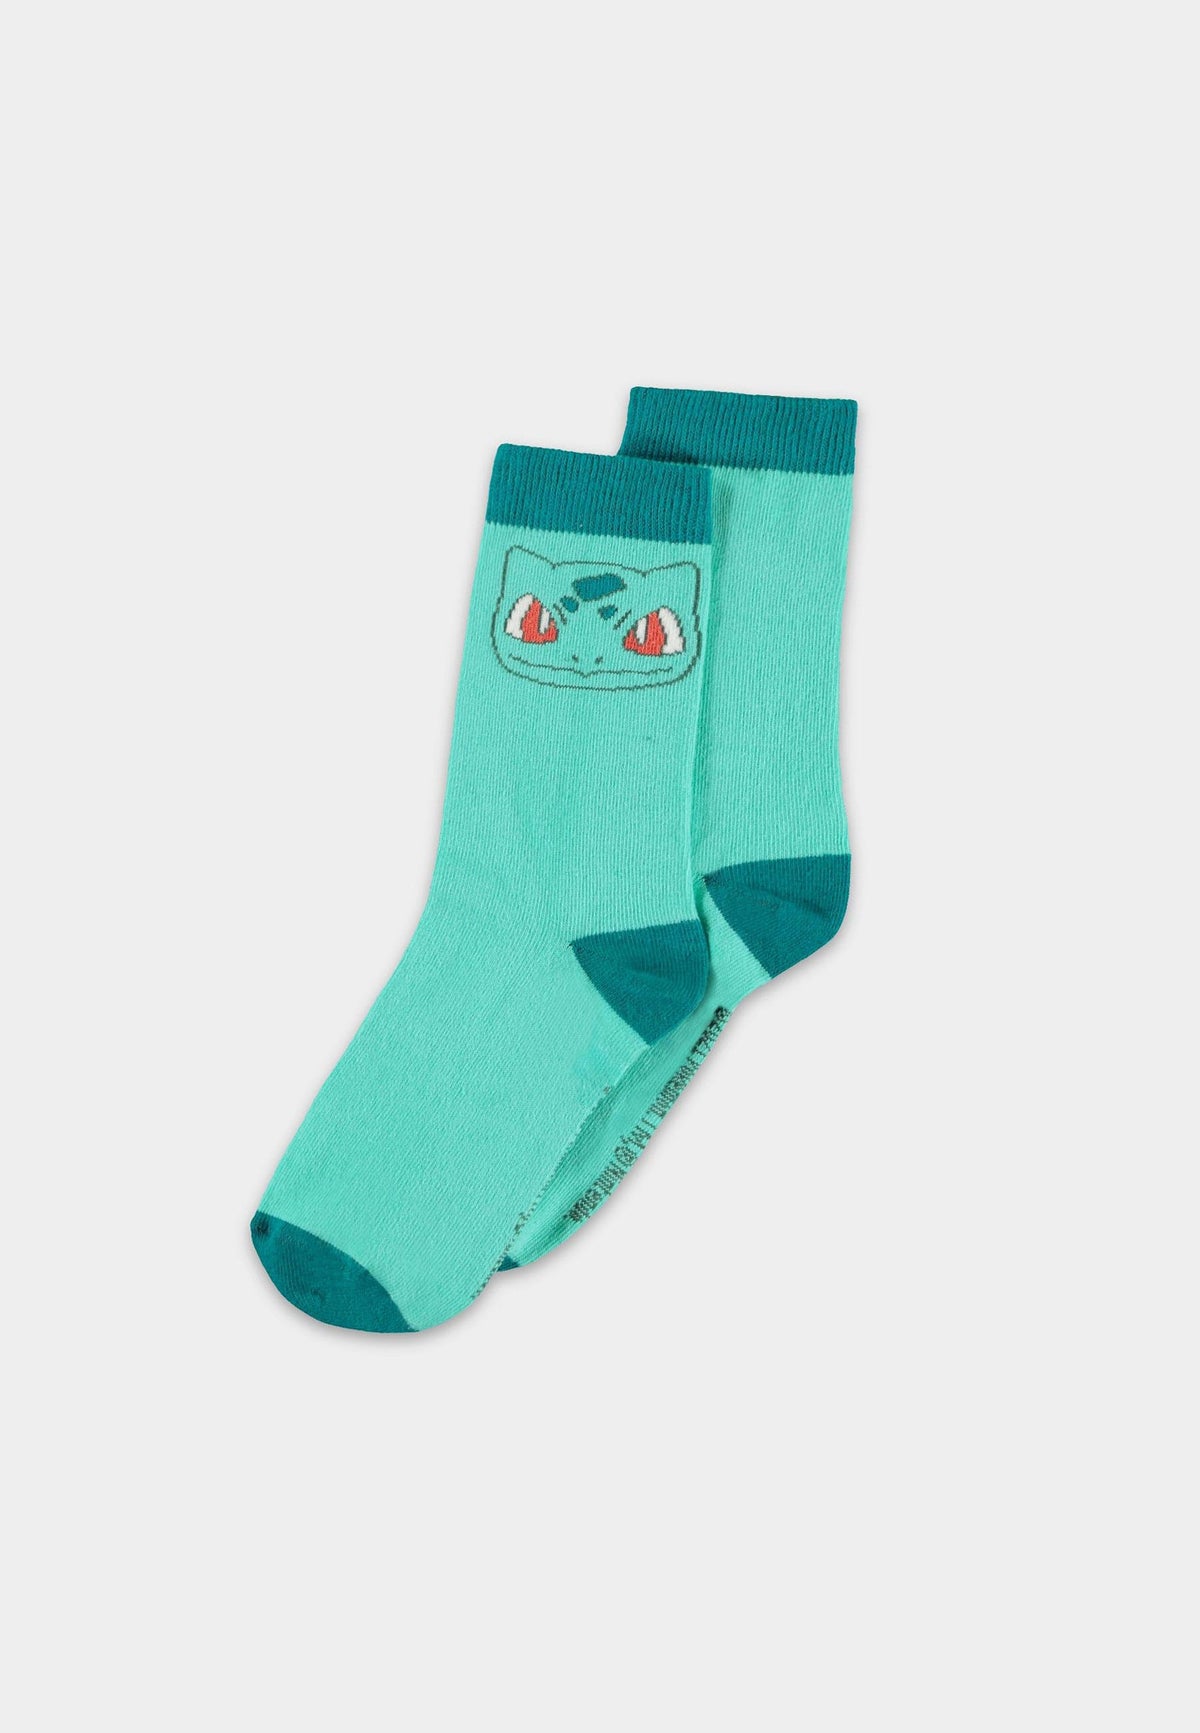 Pokemon - socks - BisaSam - size 43-46 (difuzed)